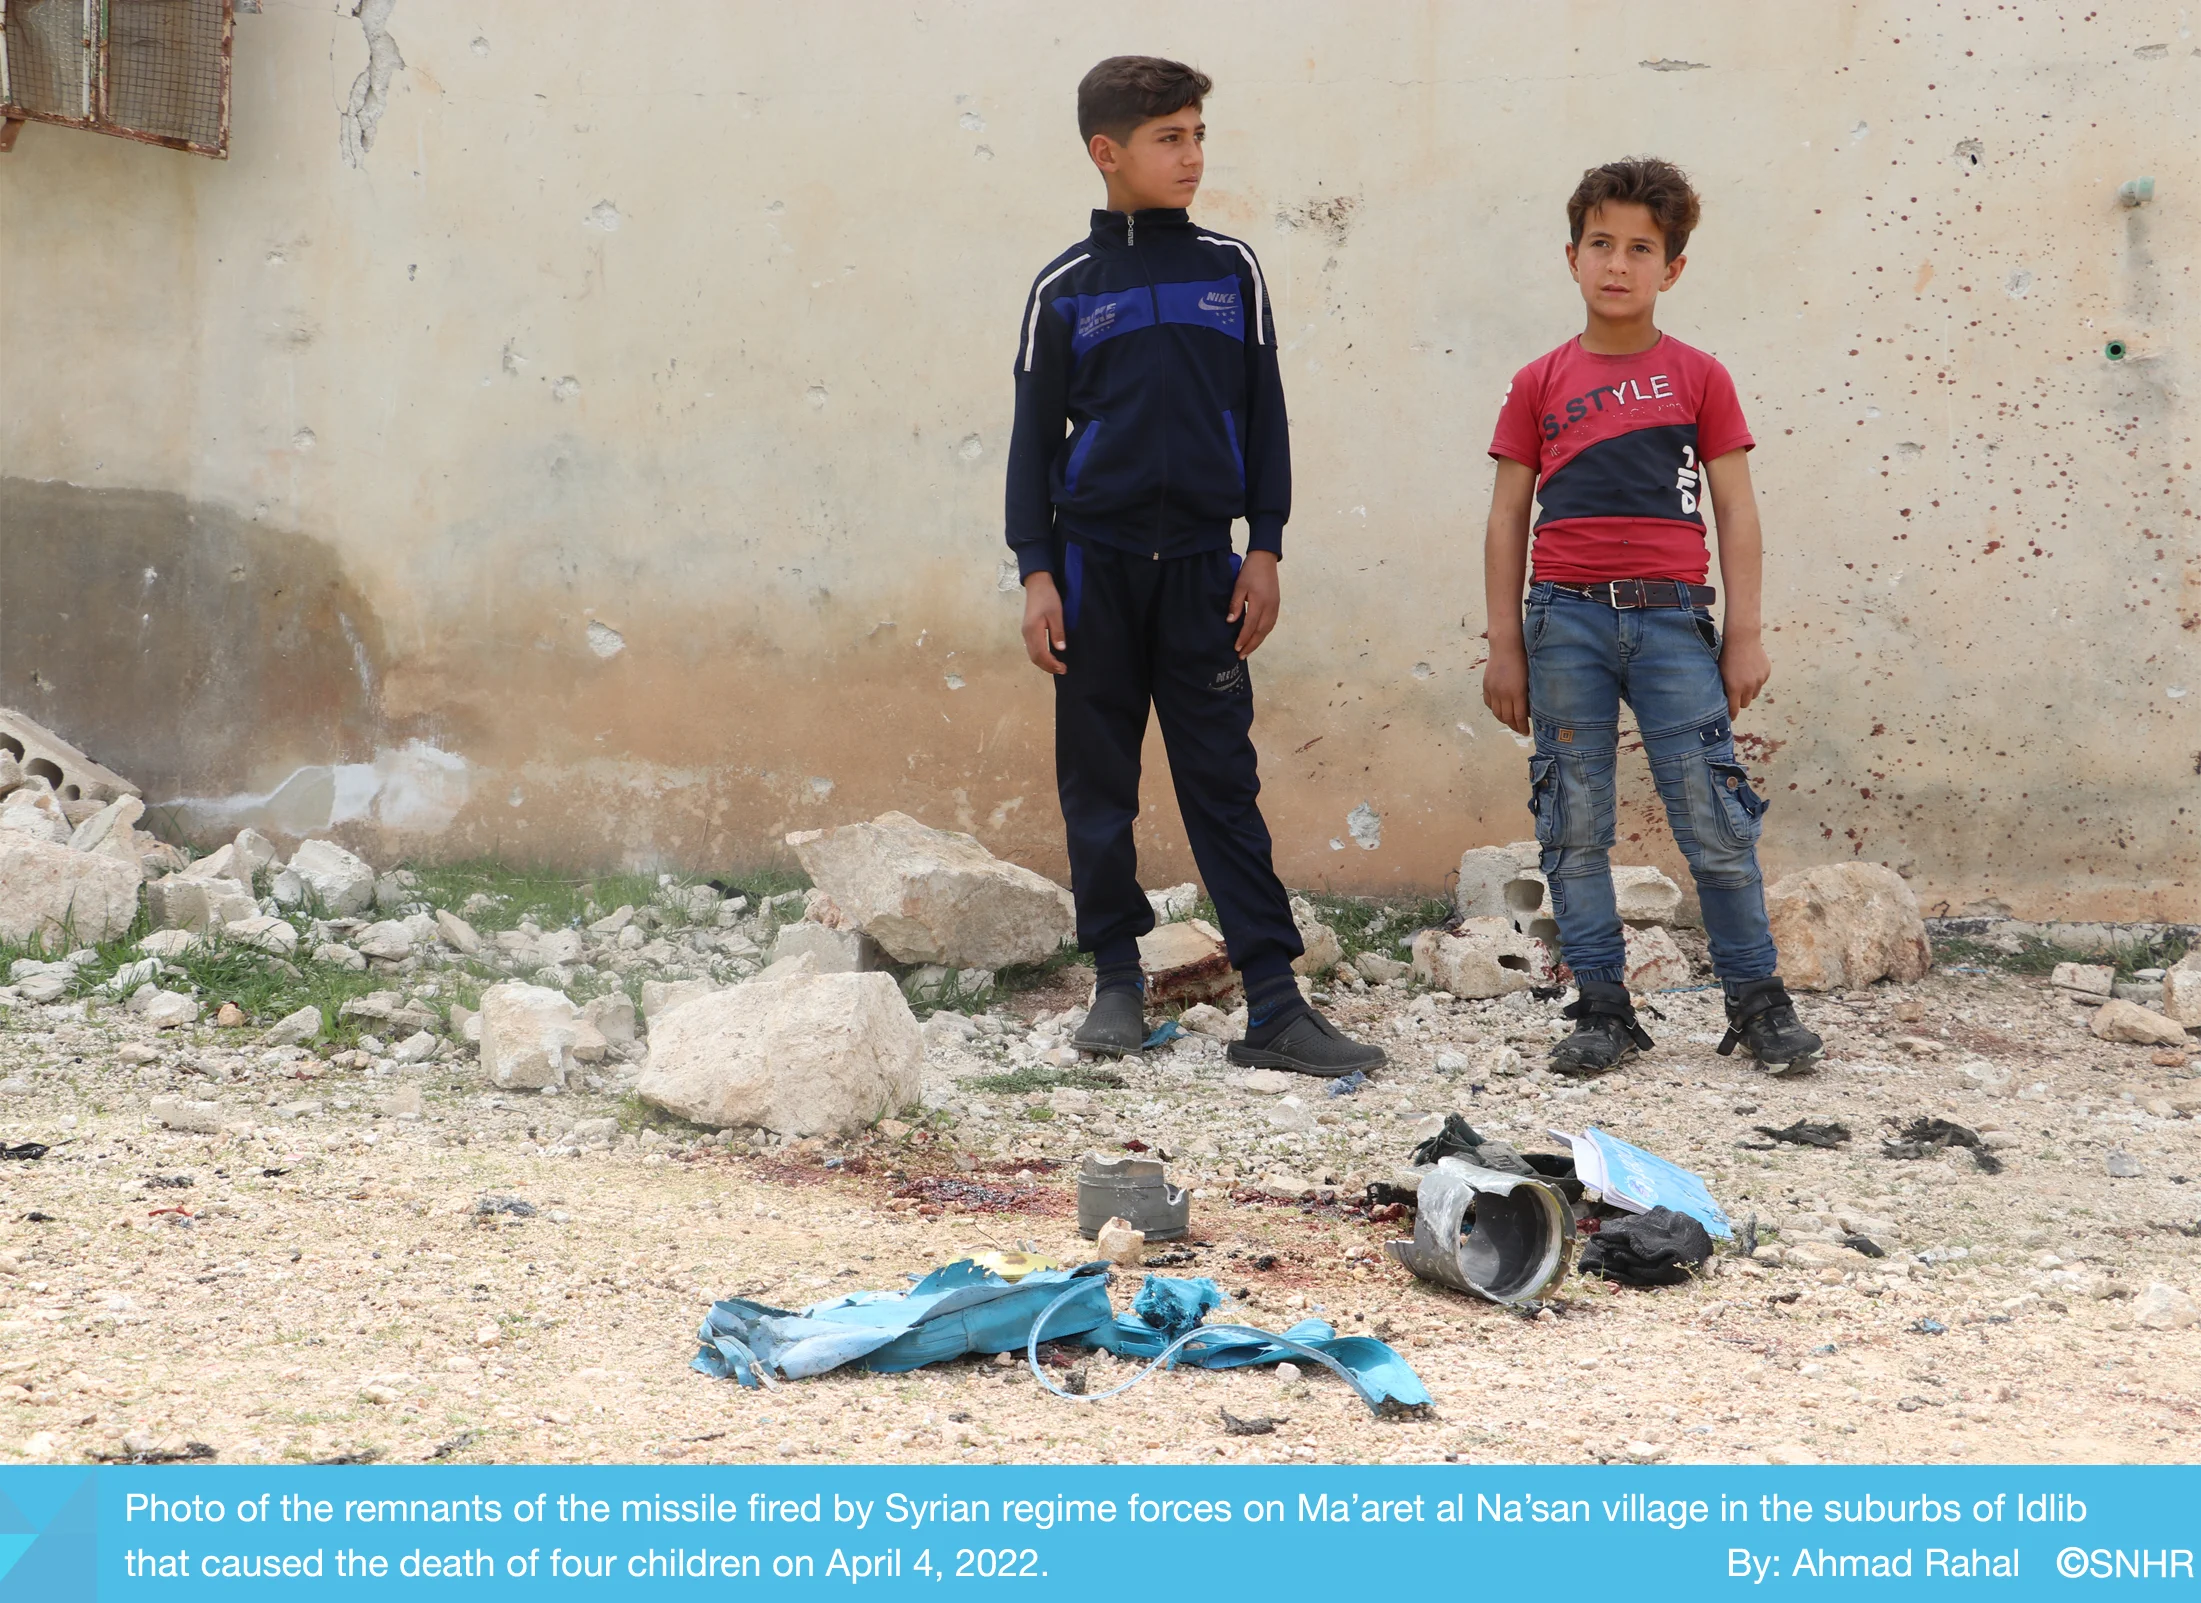 4 أطفال قتلهم النظام السوري في معارة النعسان في إدلب 4-4-2022